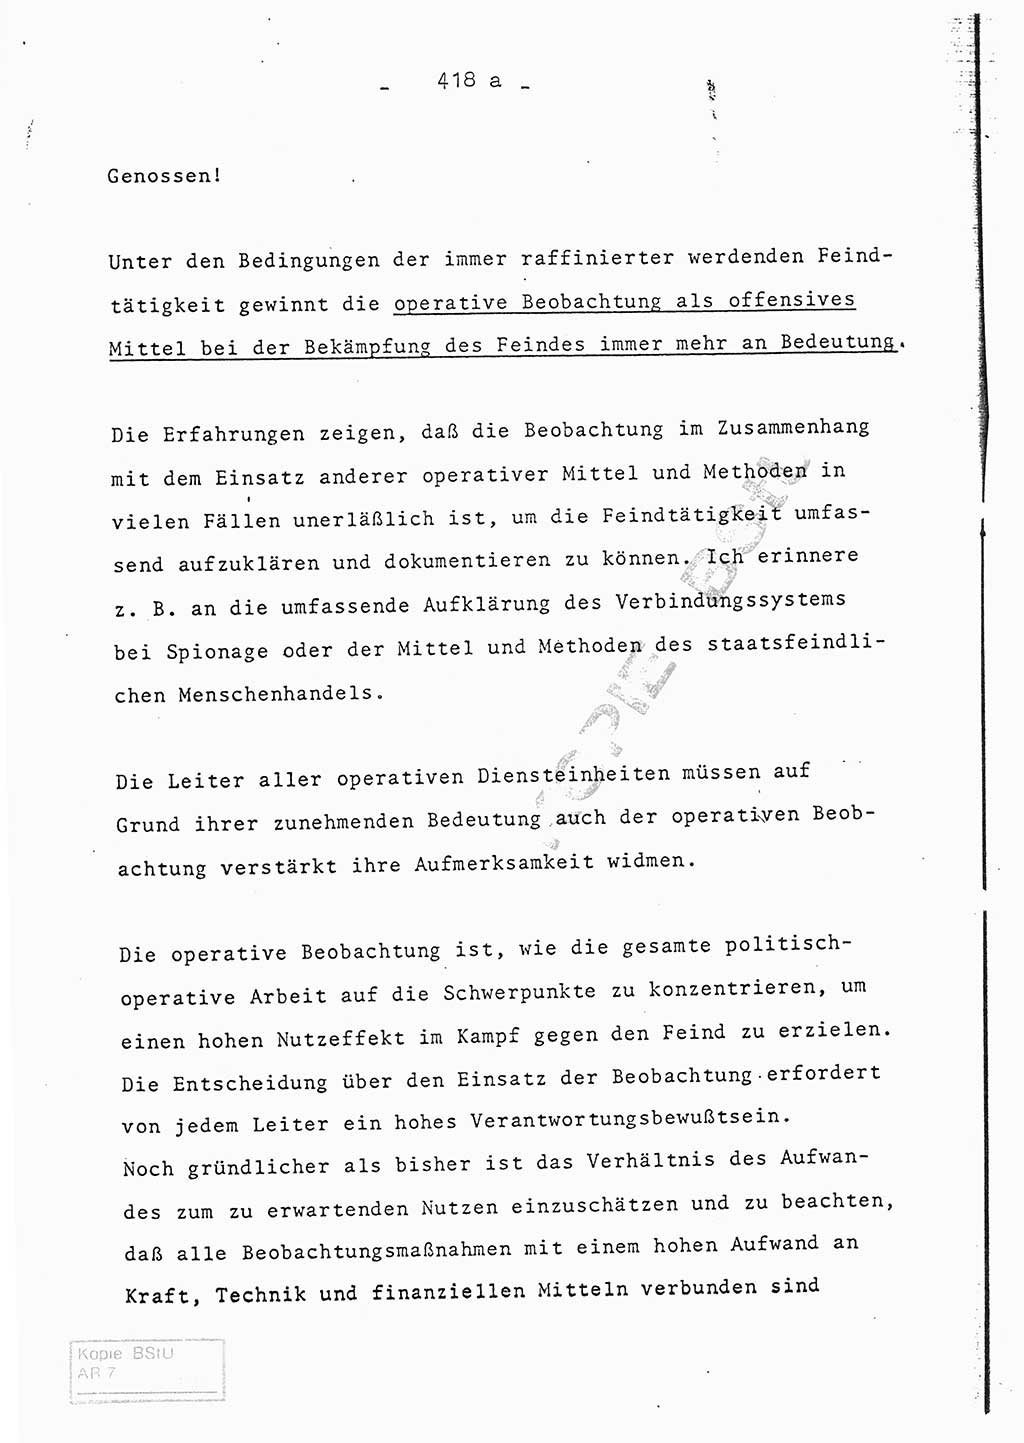 Referat (Entwurf) des Genossen Minister (Generaloberst Erich Mielke) auf der Dienstkonferenz 1972, Ministerium für Staatssicherheit (MfS) [Deutsche Demokratische Republik (DDR)], Der Minister, Geheime Verschlußsache (GVS) 008-150/72, Berlin 25.2.1972, Seite 418/1 (Ref. Entw. DK MfS DDR Min. GVS 008-150/72 1972, S. 418/1)